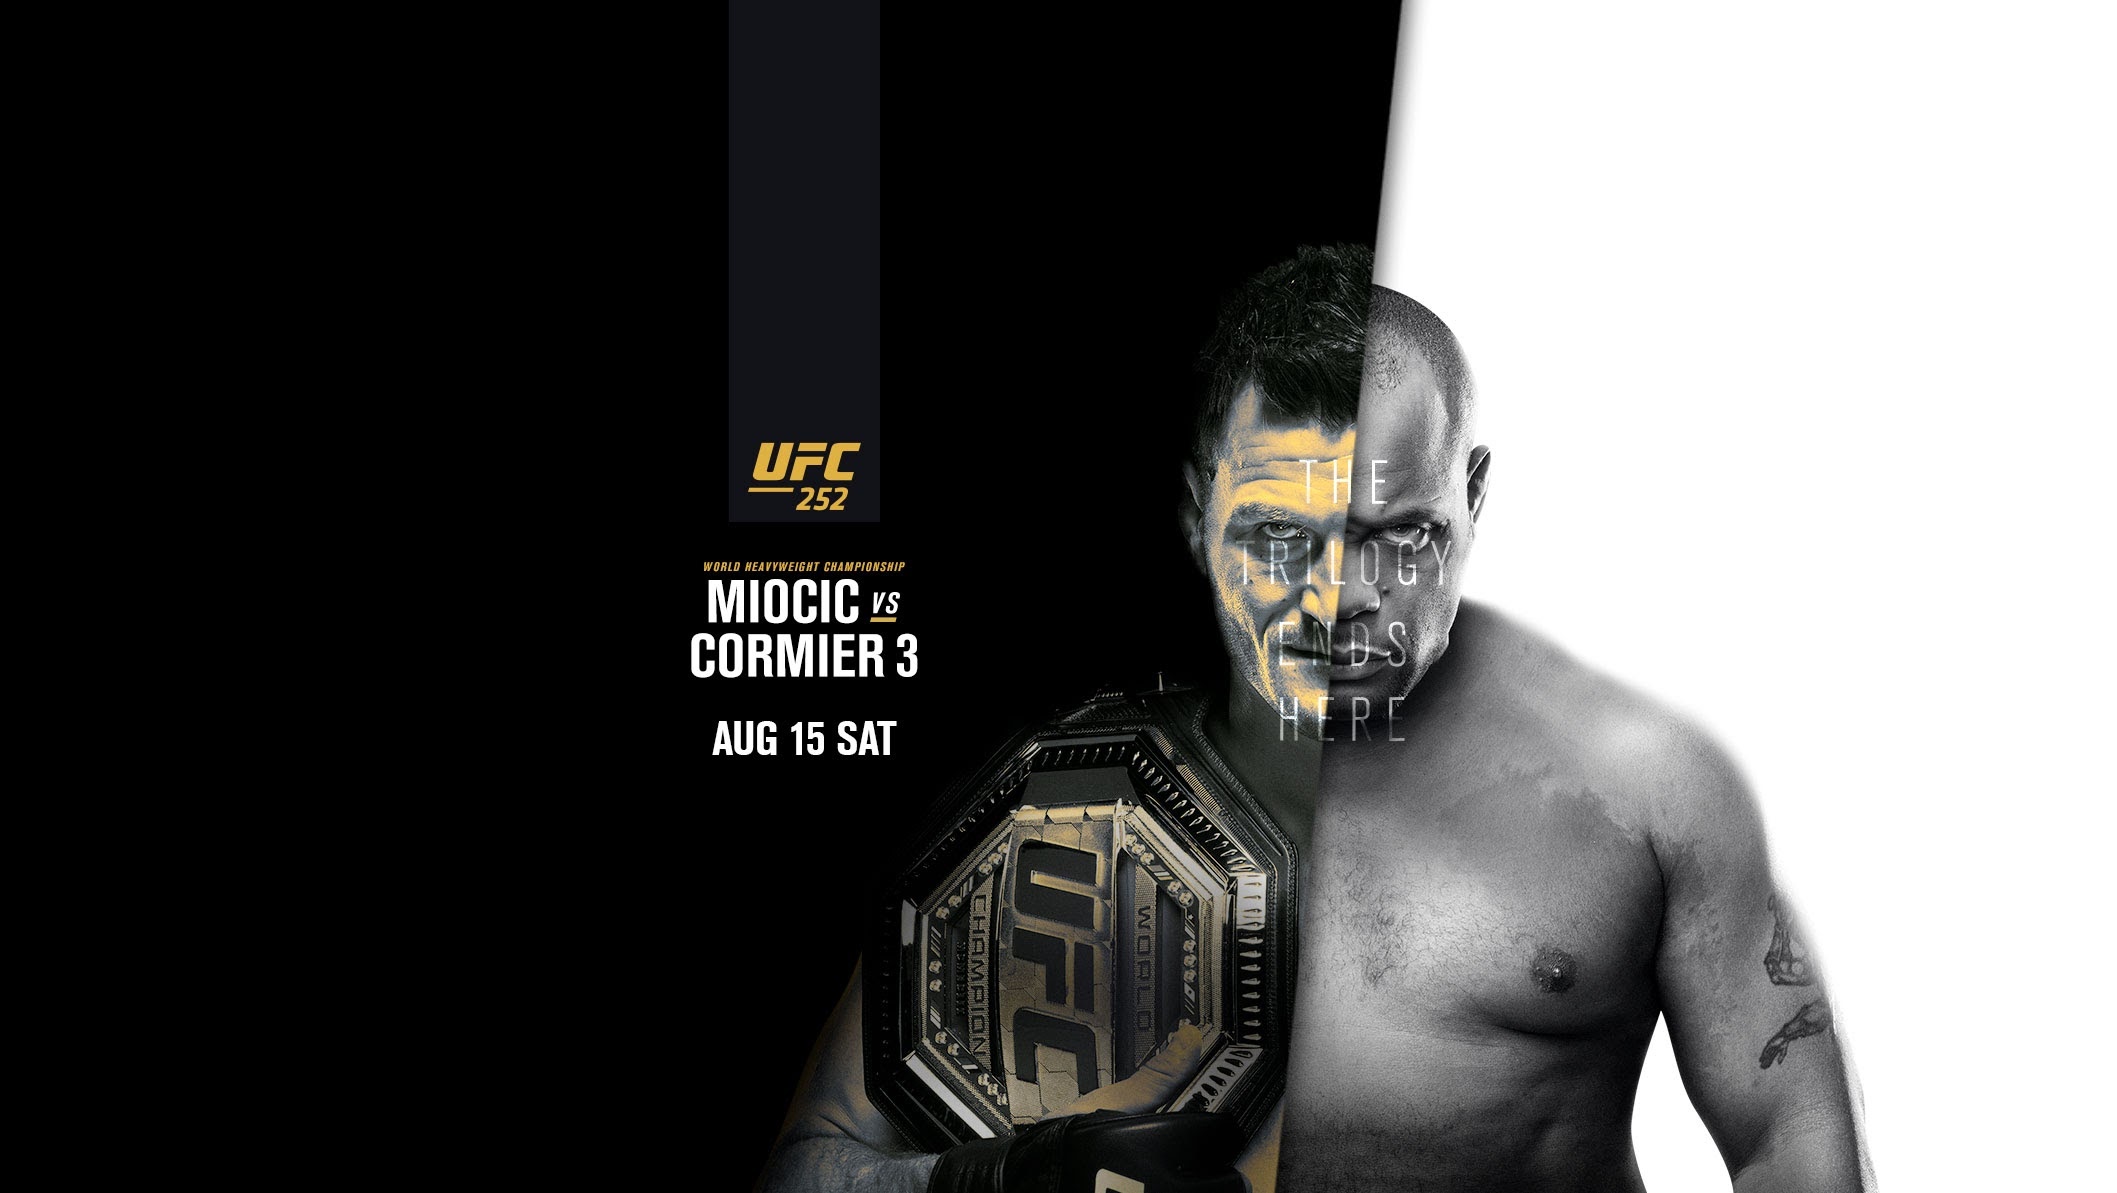 UFC 252 - Las vegas - Poster et affiche